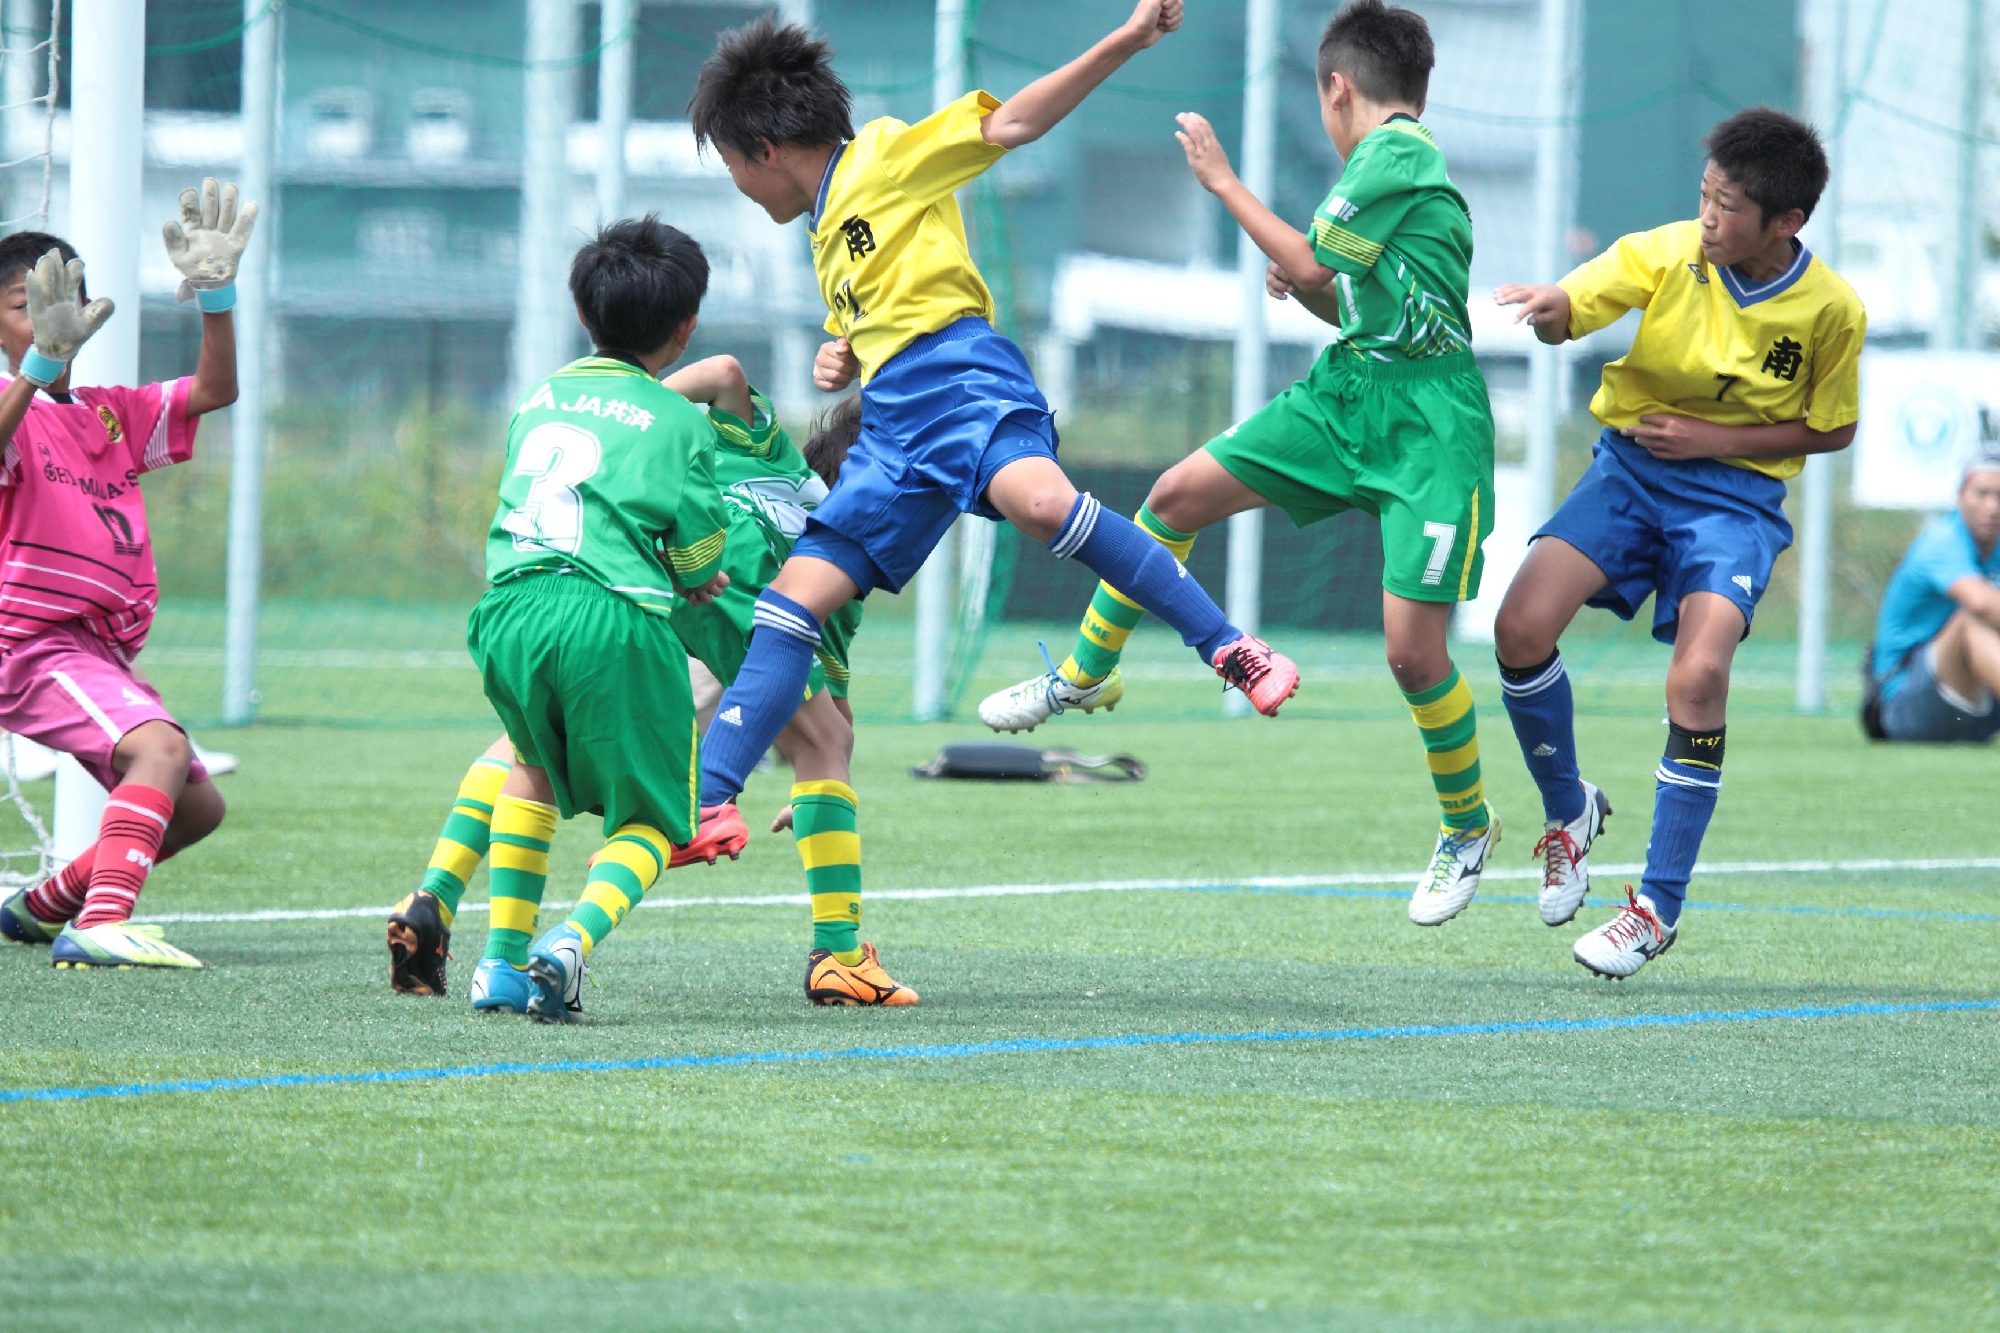 一般社団法人 日本サッカー名蹴会 公式サイト 第3回jcカップ U 11少年少女サッカー大会